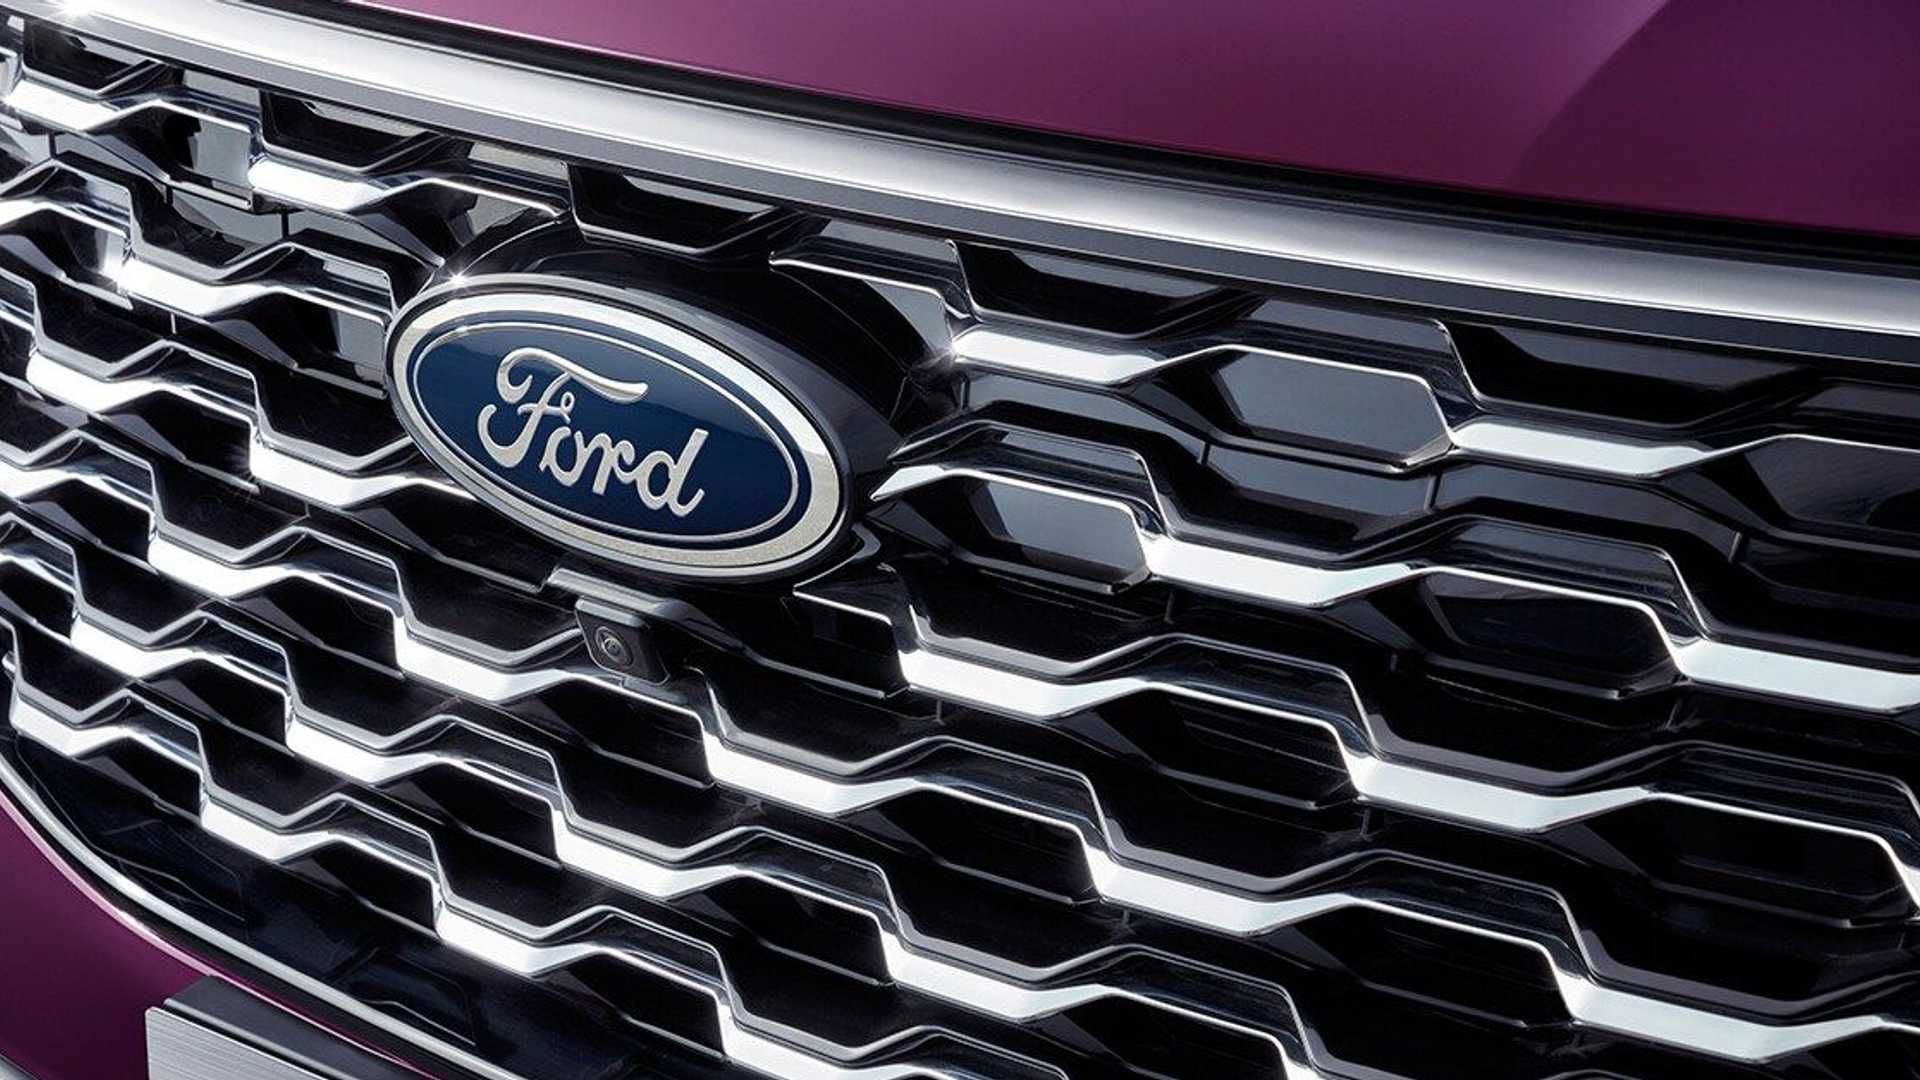 مرجع متخصصين ايران جلوپنجره شاسي بلند فورد اكويتور / Ford Equator SUV رنگ بنفش